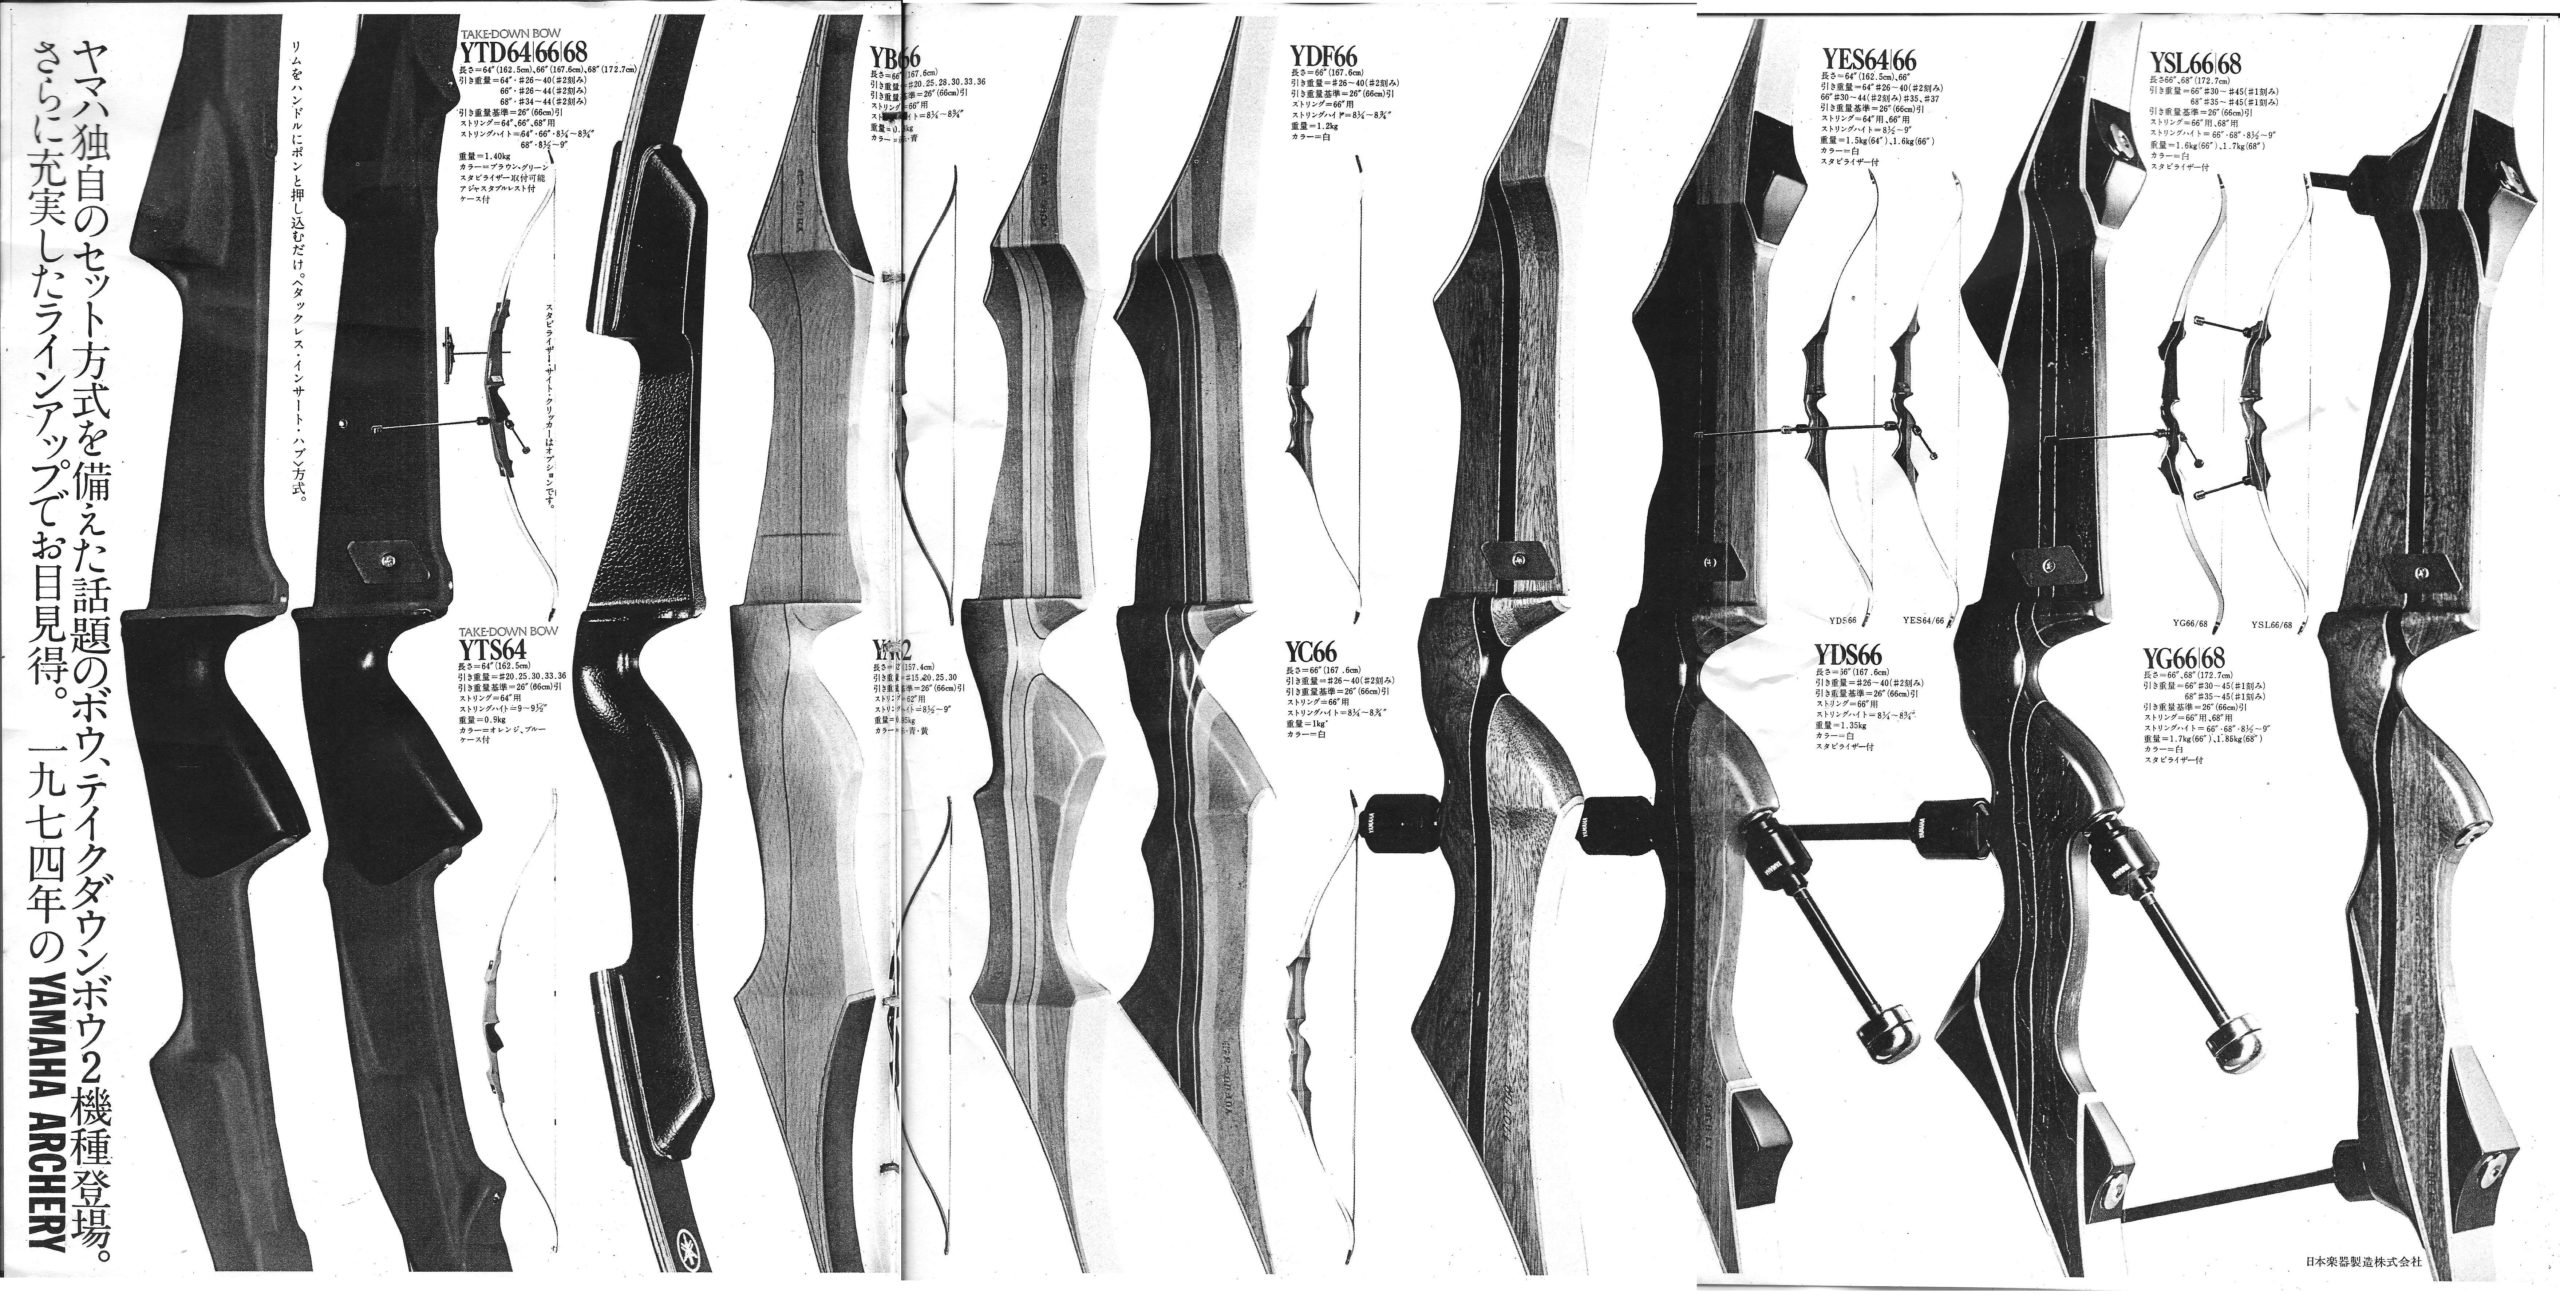 YAMAHA(ヤマハ)の弓具と機能一覧 | アーチャーレポート | アーチェリー 